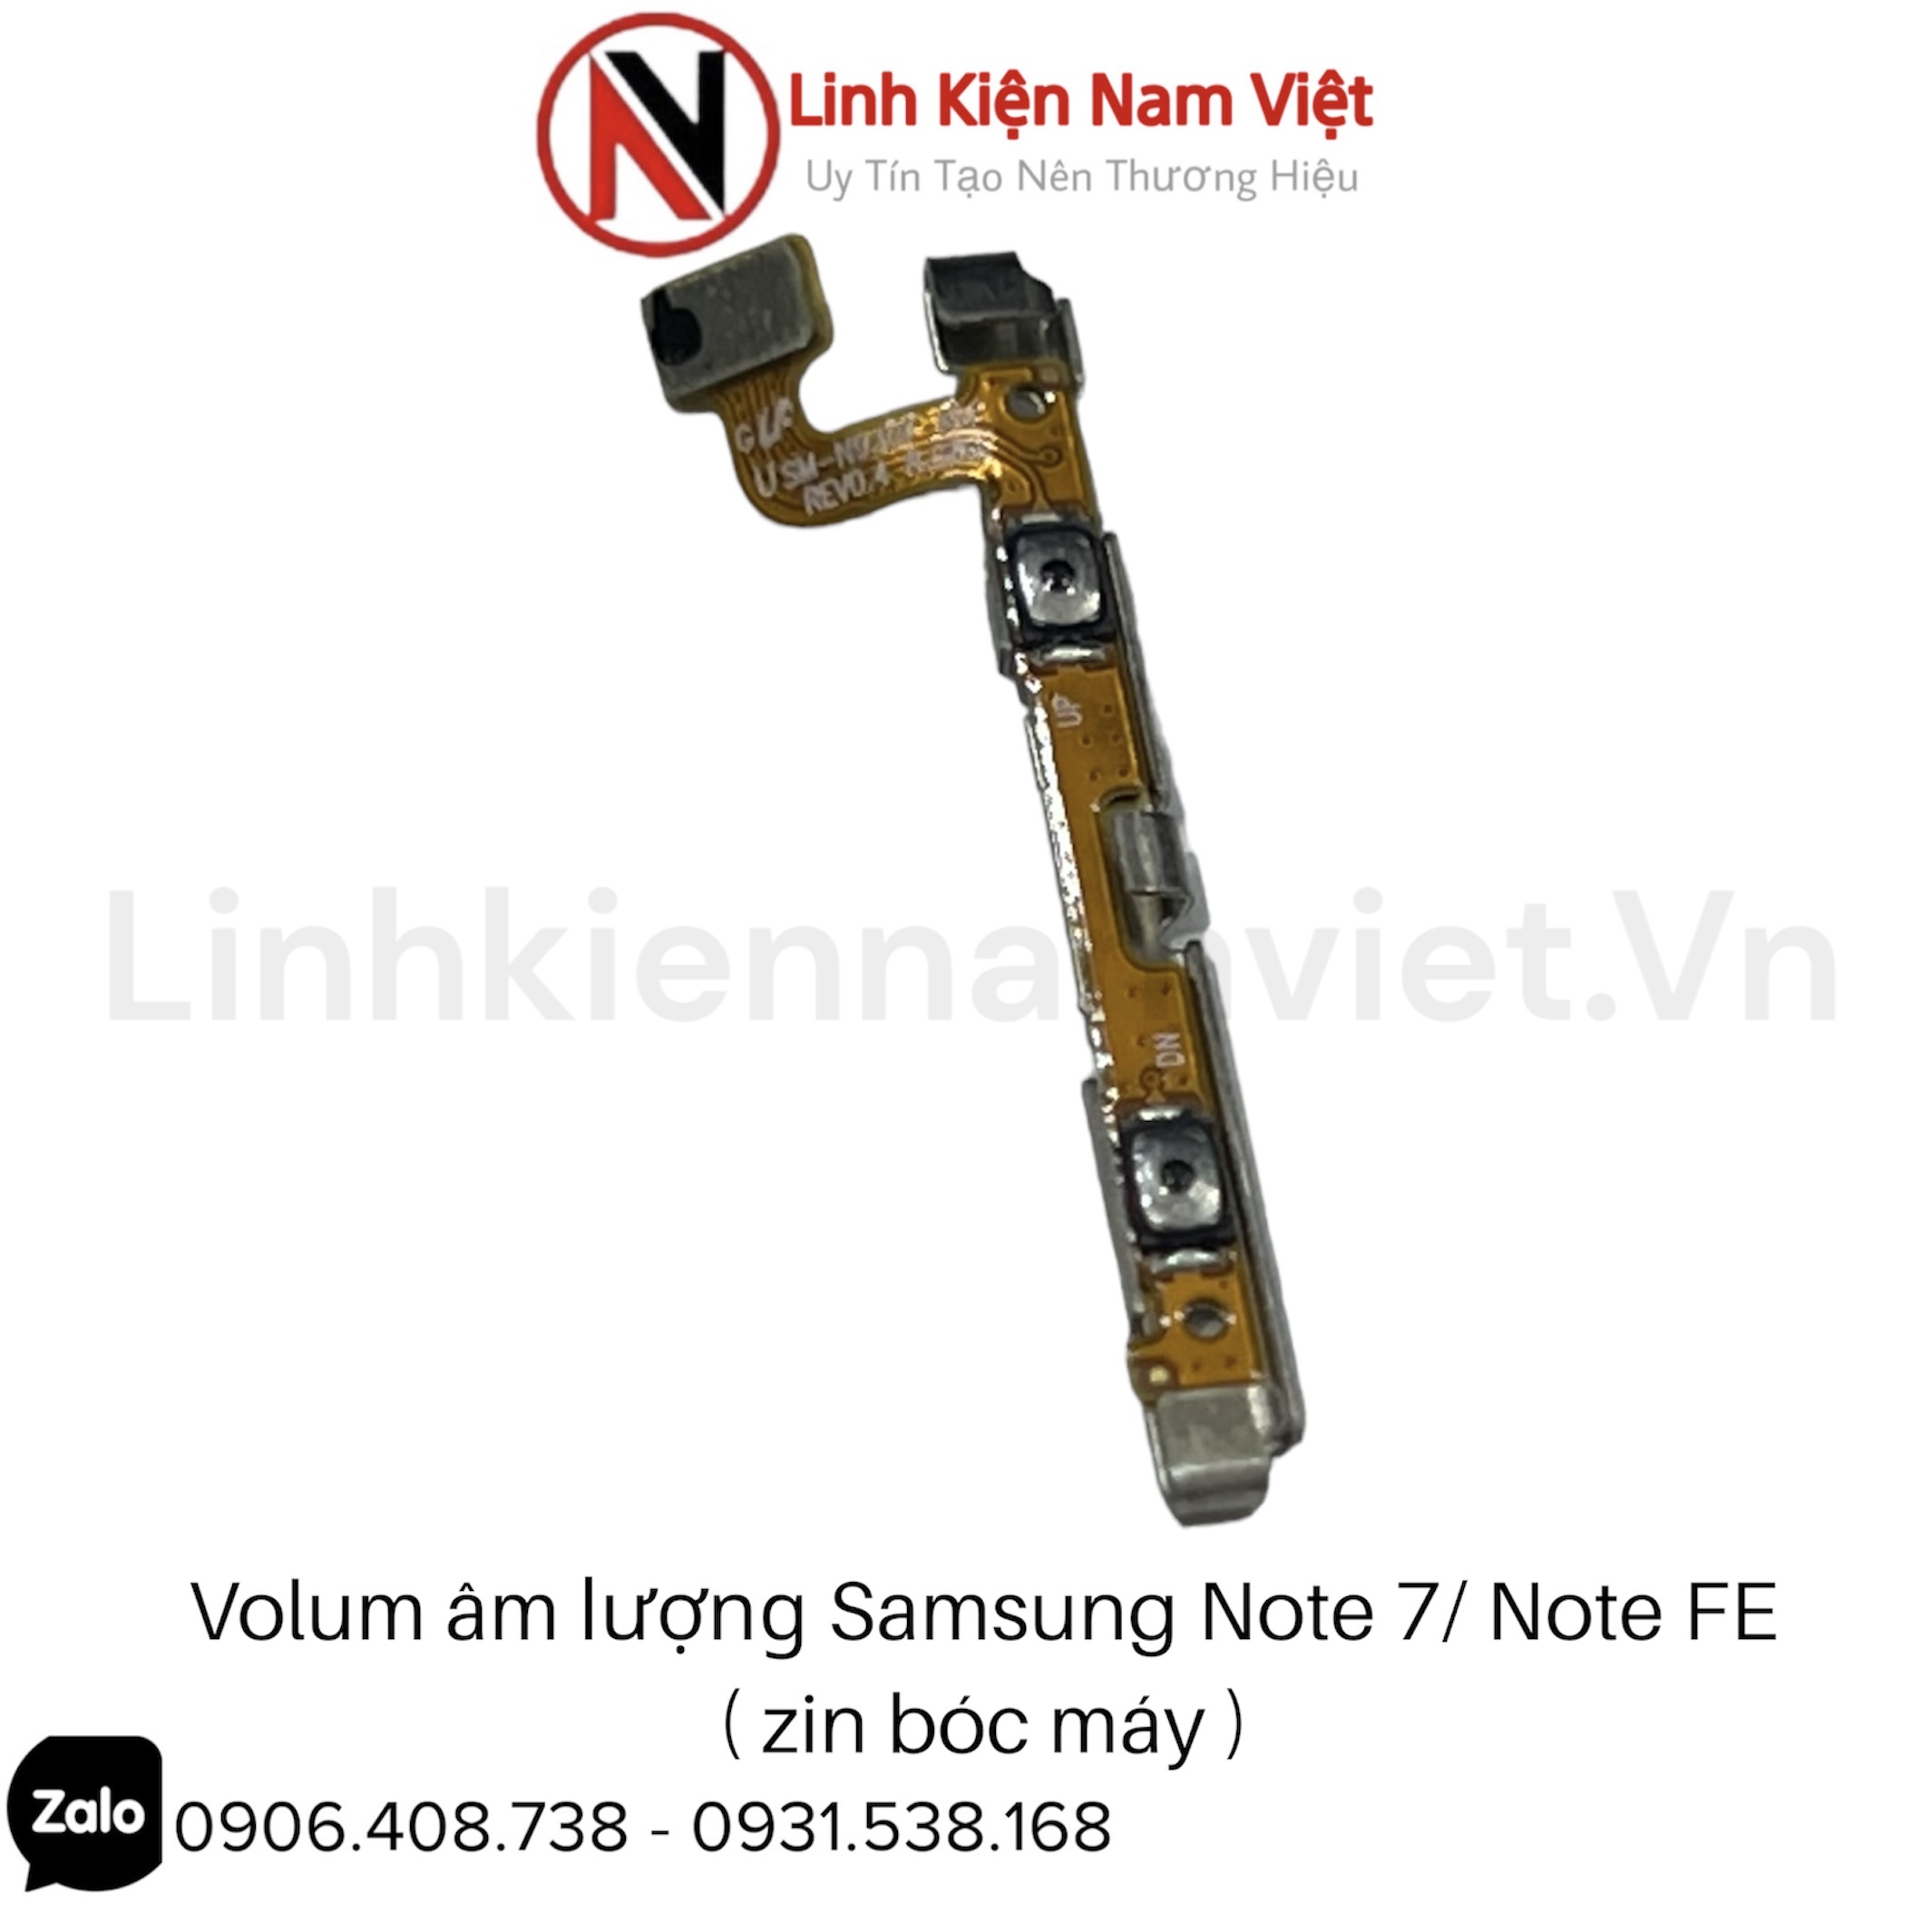 Volum âm lượng Samsung Note 7/ Note FE (Zin bóc máy)